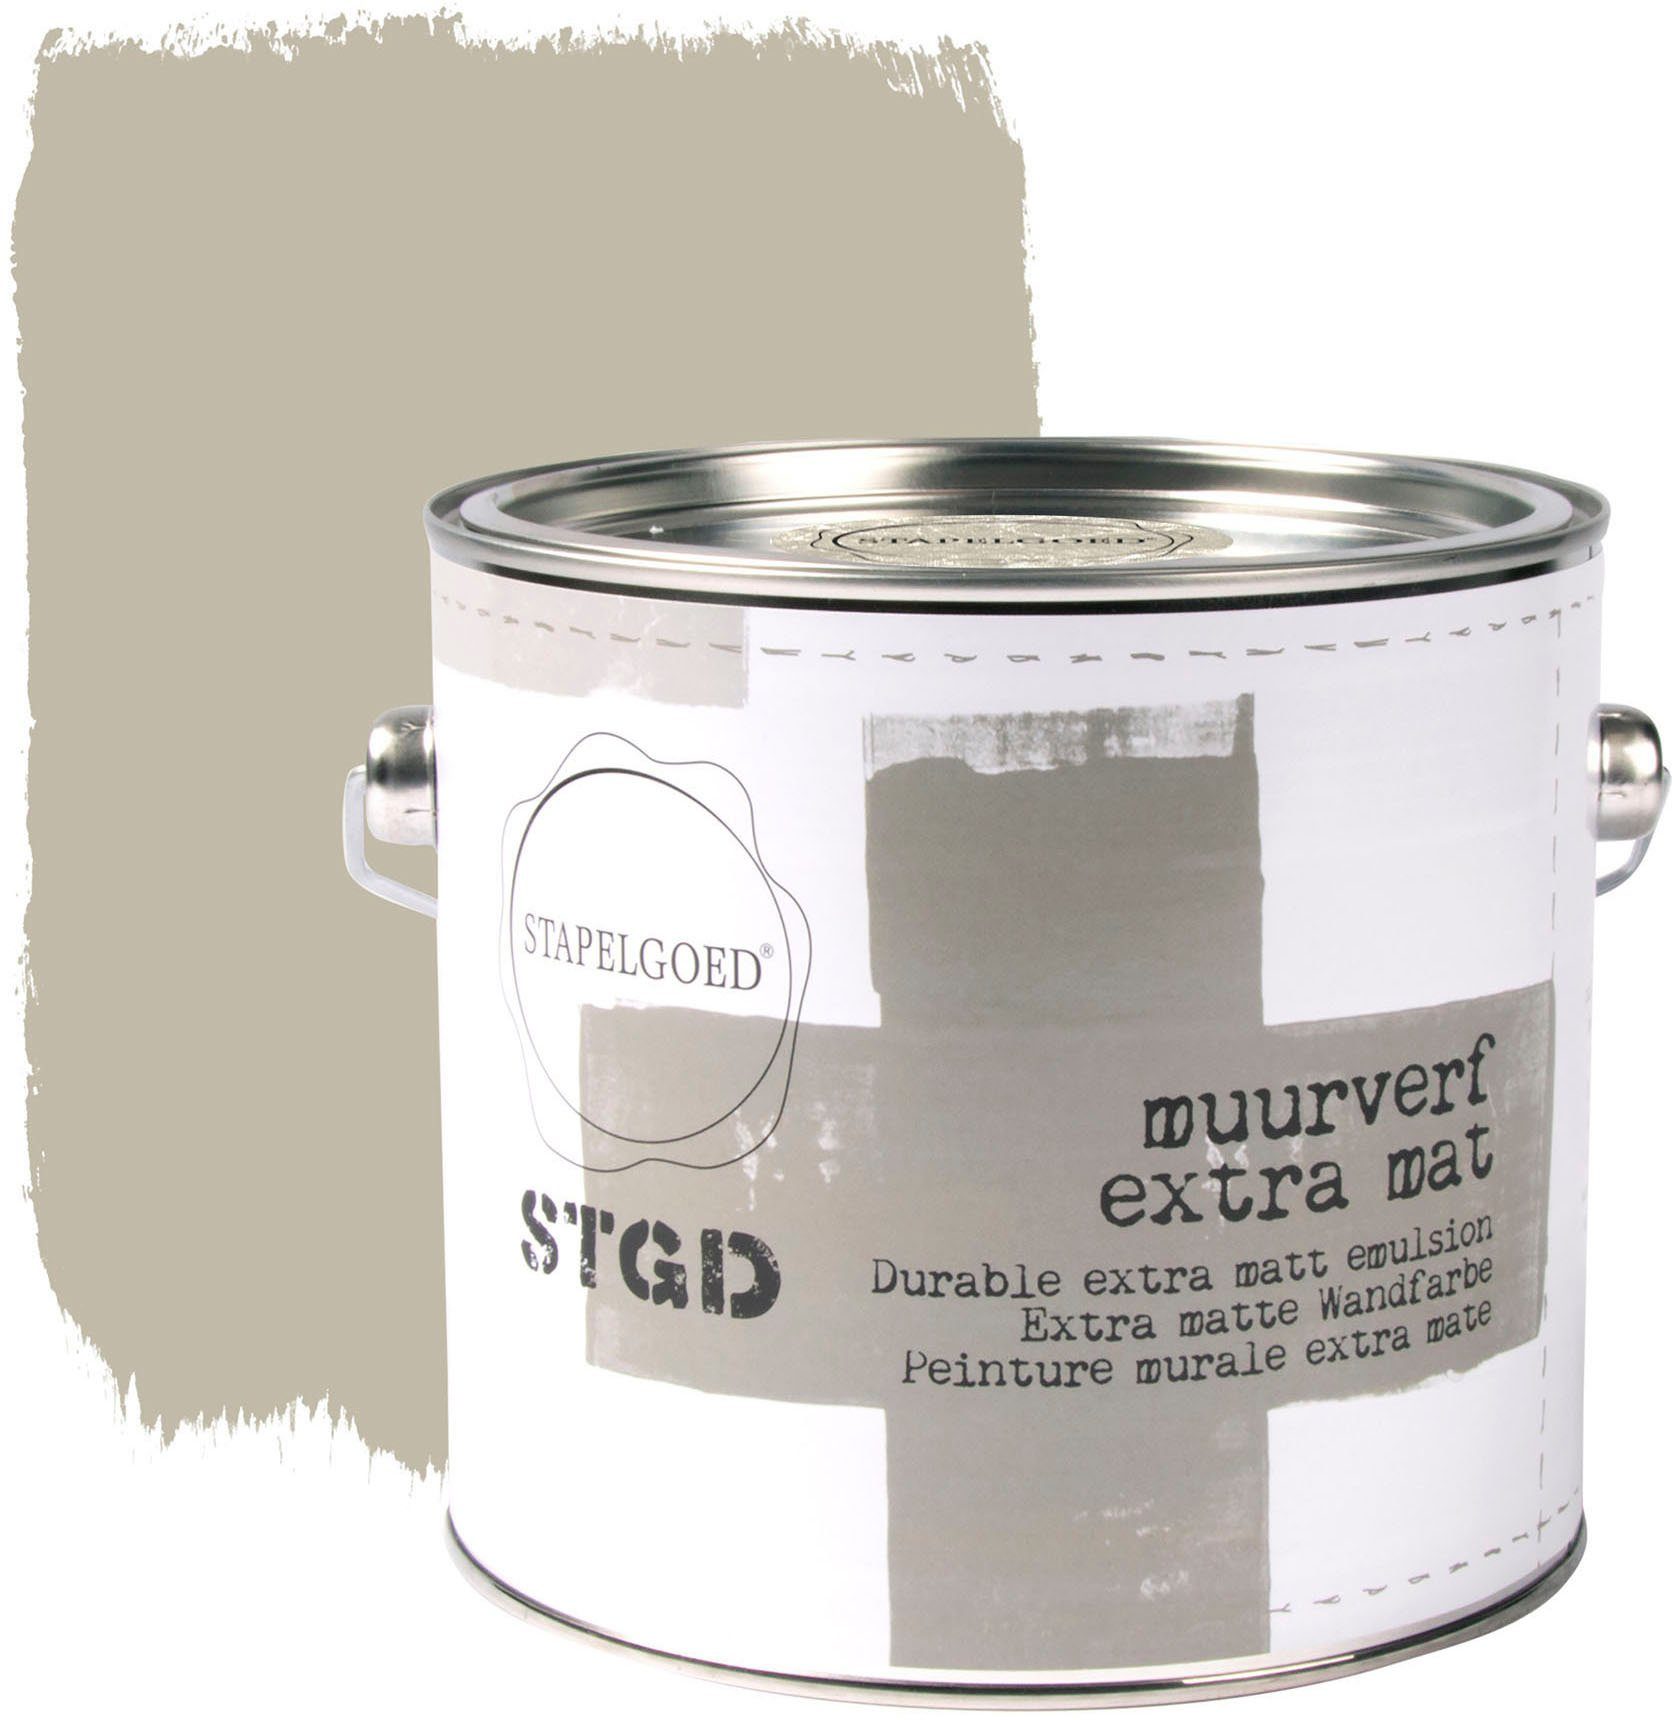 STAPELGOED Wandfarbe STGD muurverf grey shades, extra matt, hochdeckend und waschbeständig, 2,5 Liter Stone Grey